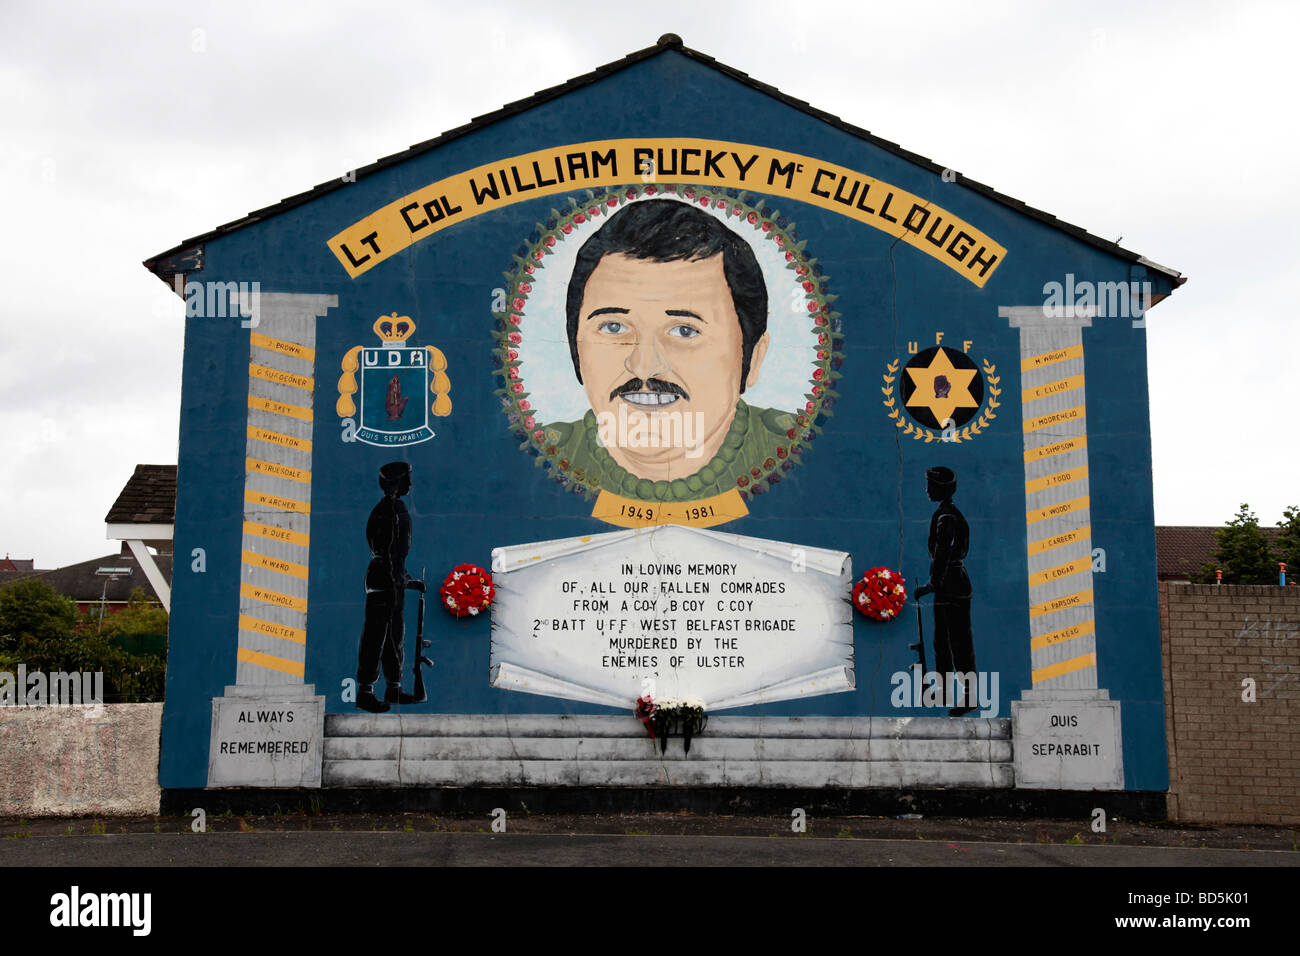 Lealisti murale in basso Shankill commemorando William 'Bucky' McCullough, che è stato ucciso dalla INLA nel 2001. Foto Stock